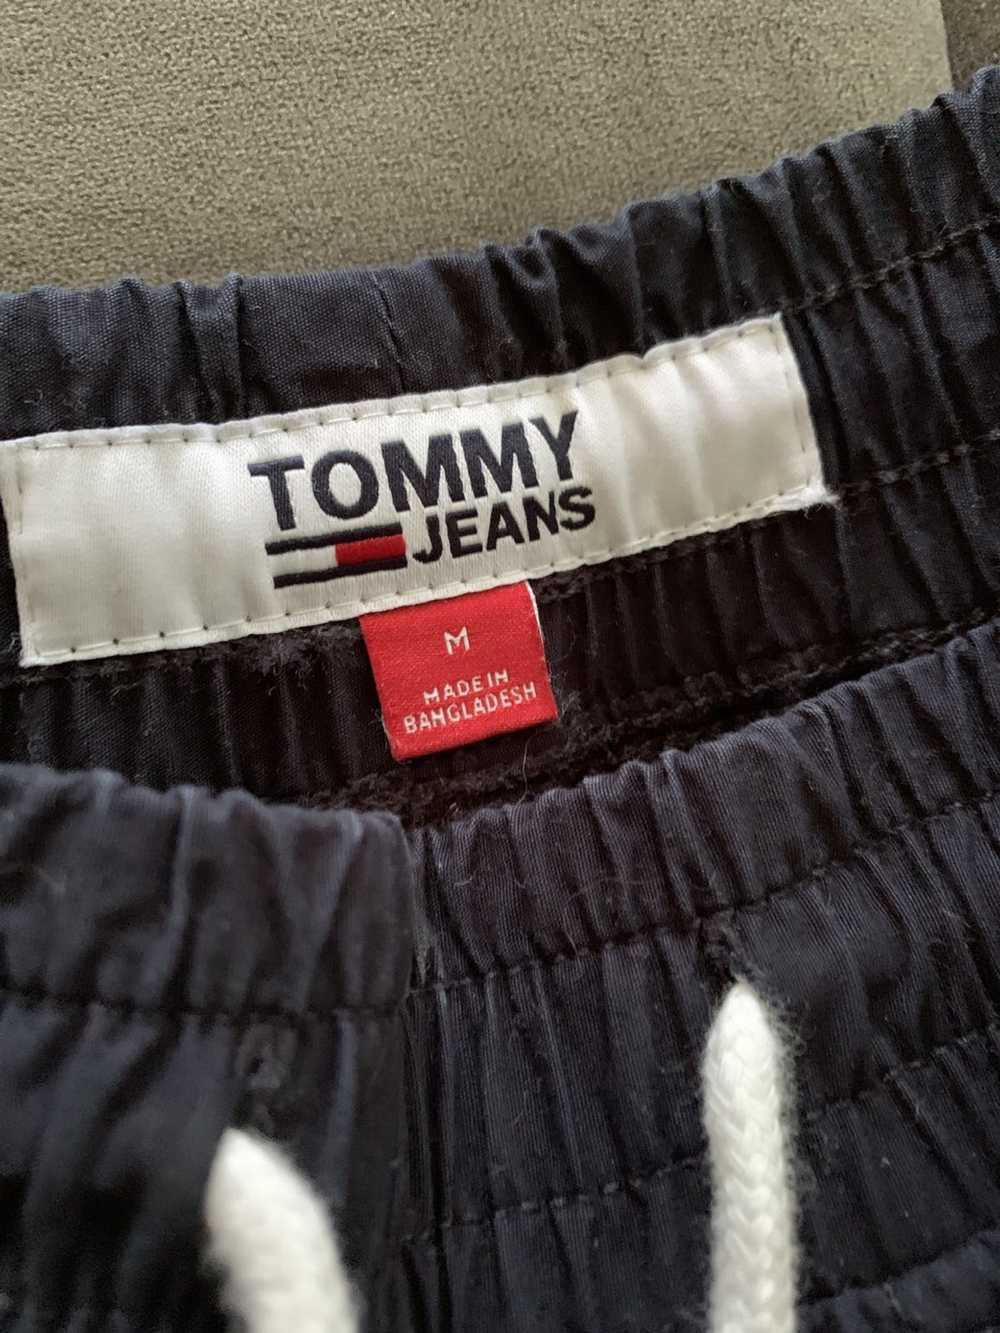 Tommy Hilfiger tommy hilfiger pants - image 3